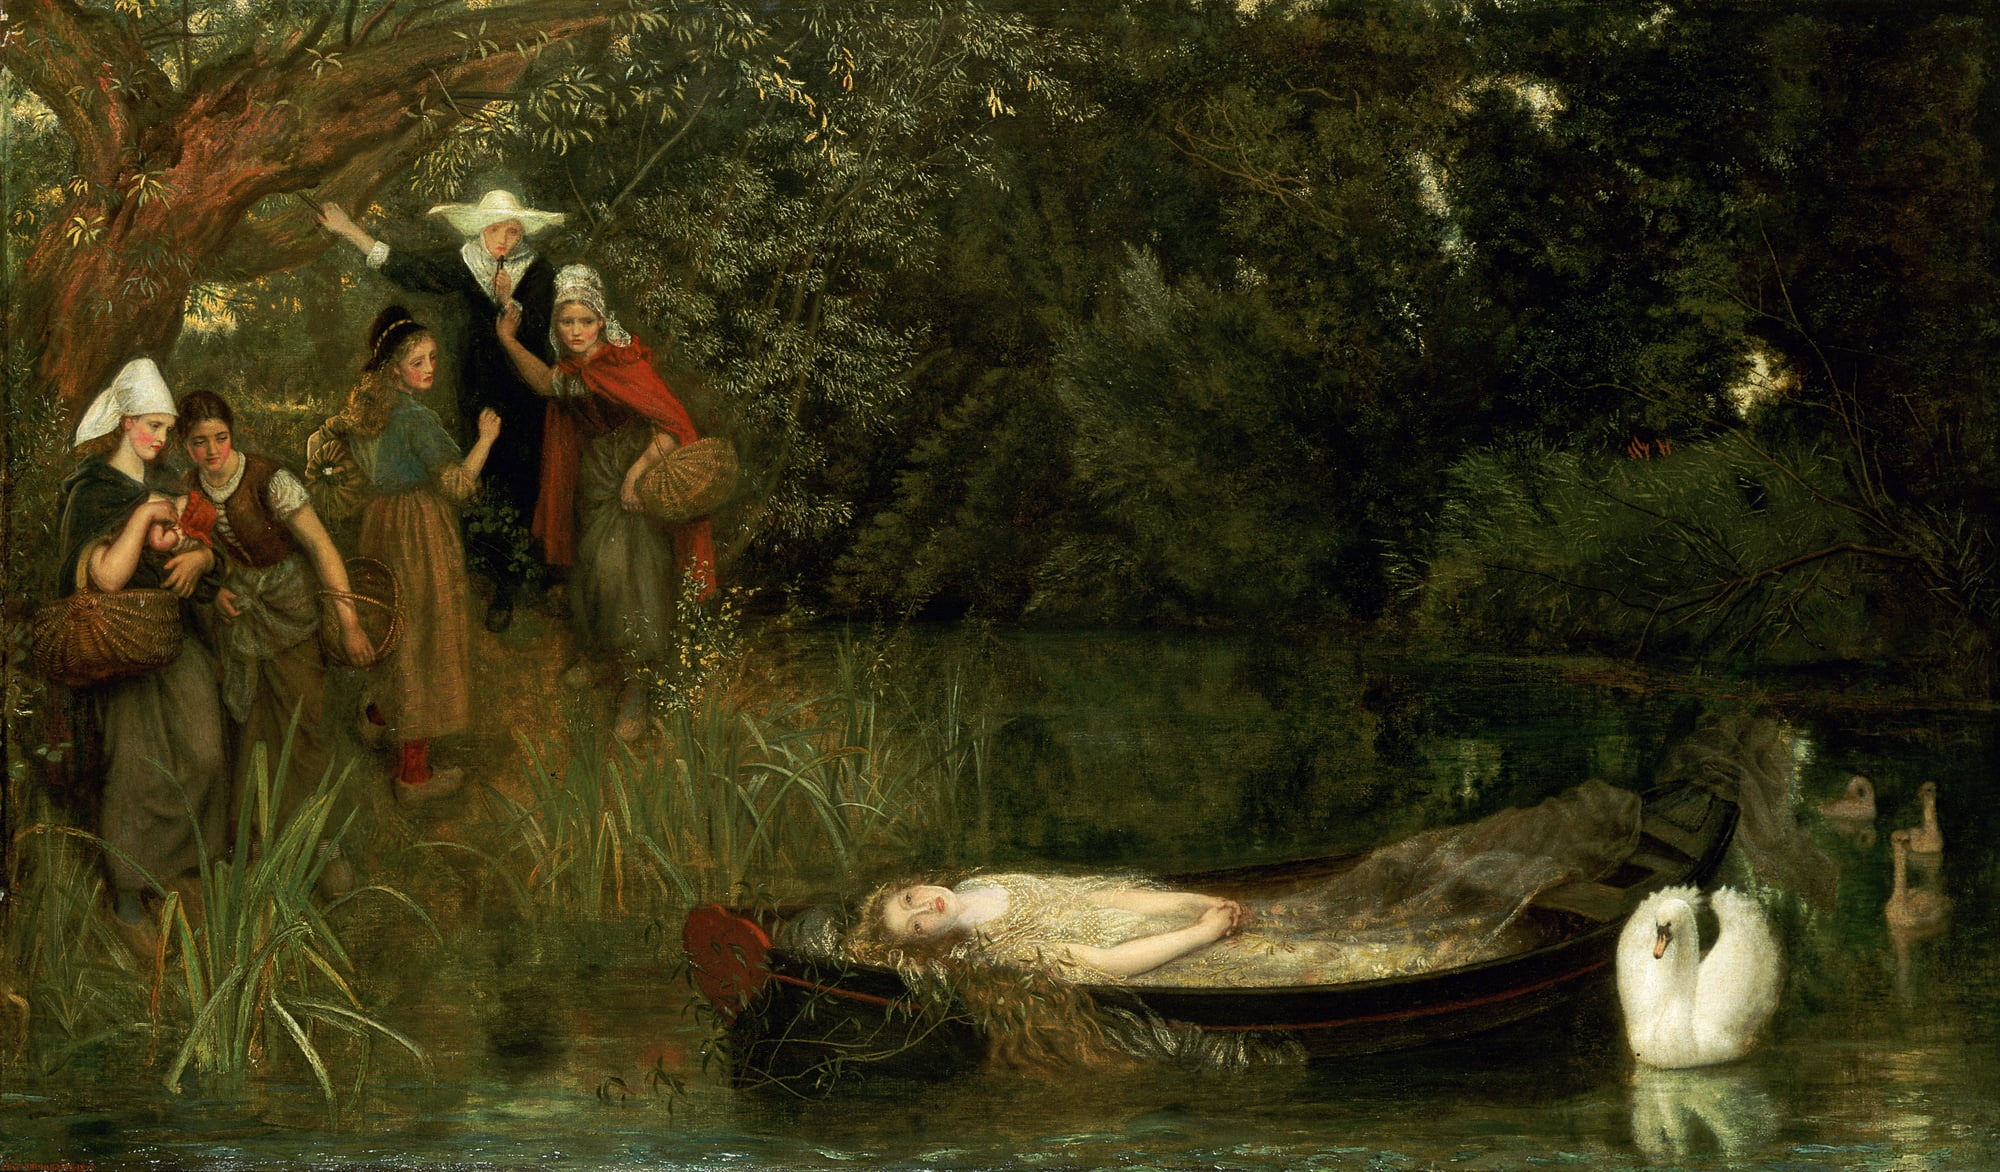 Swan, Arthur Hughes, Lady Shallot, 1872-1873